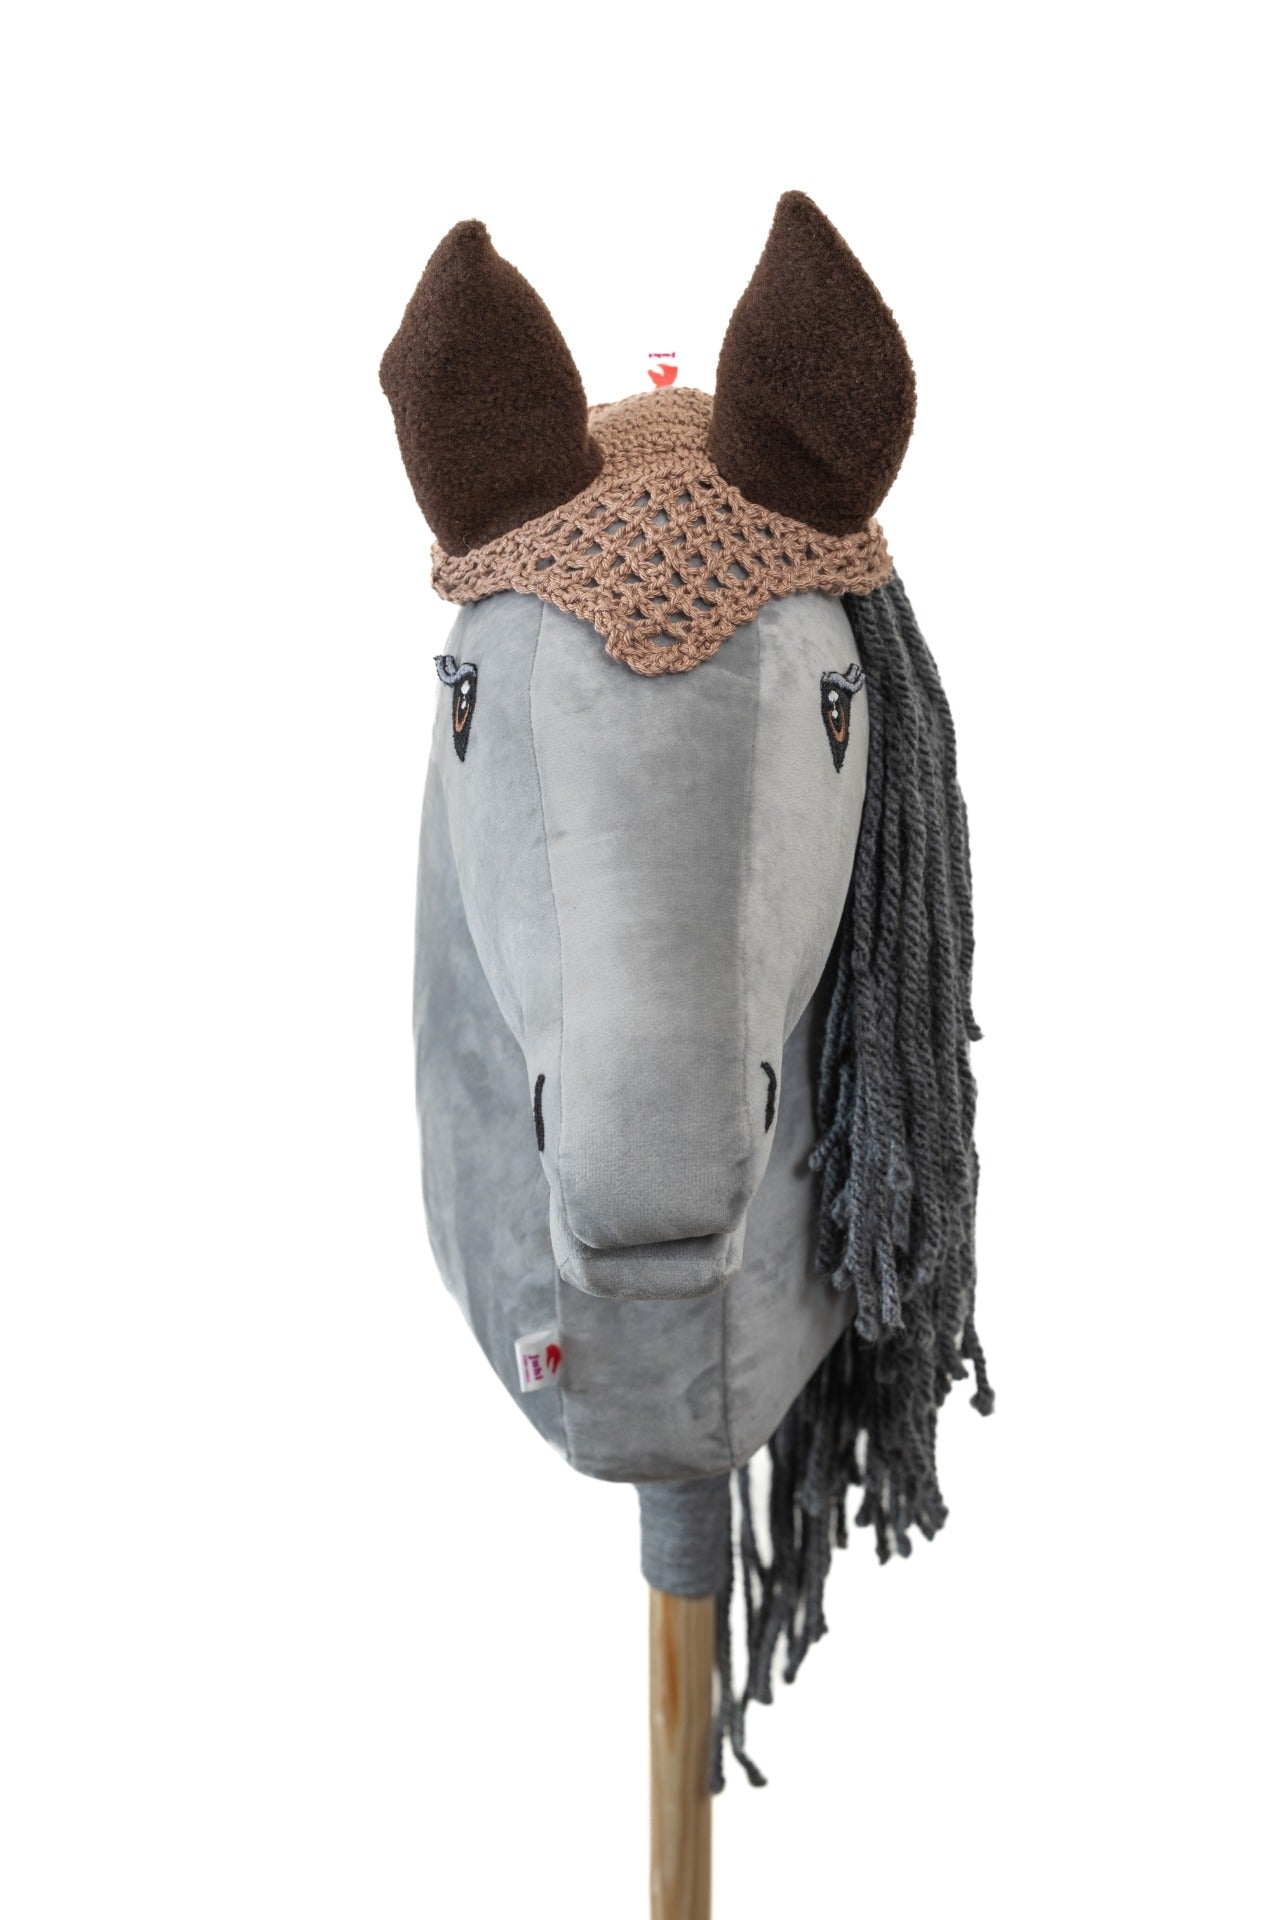 Ear net crocheted - Beige with brown ears - Foal